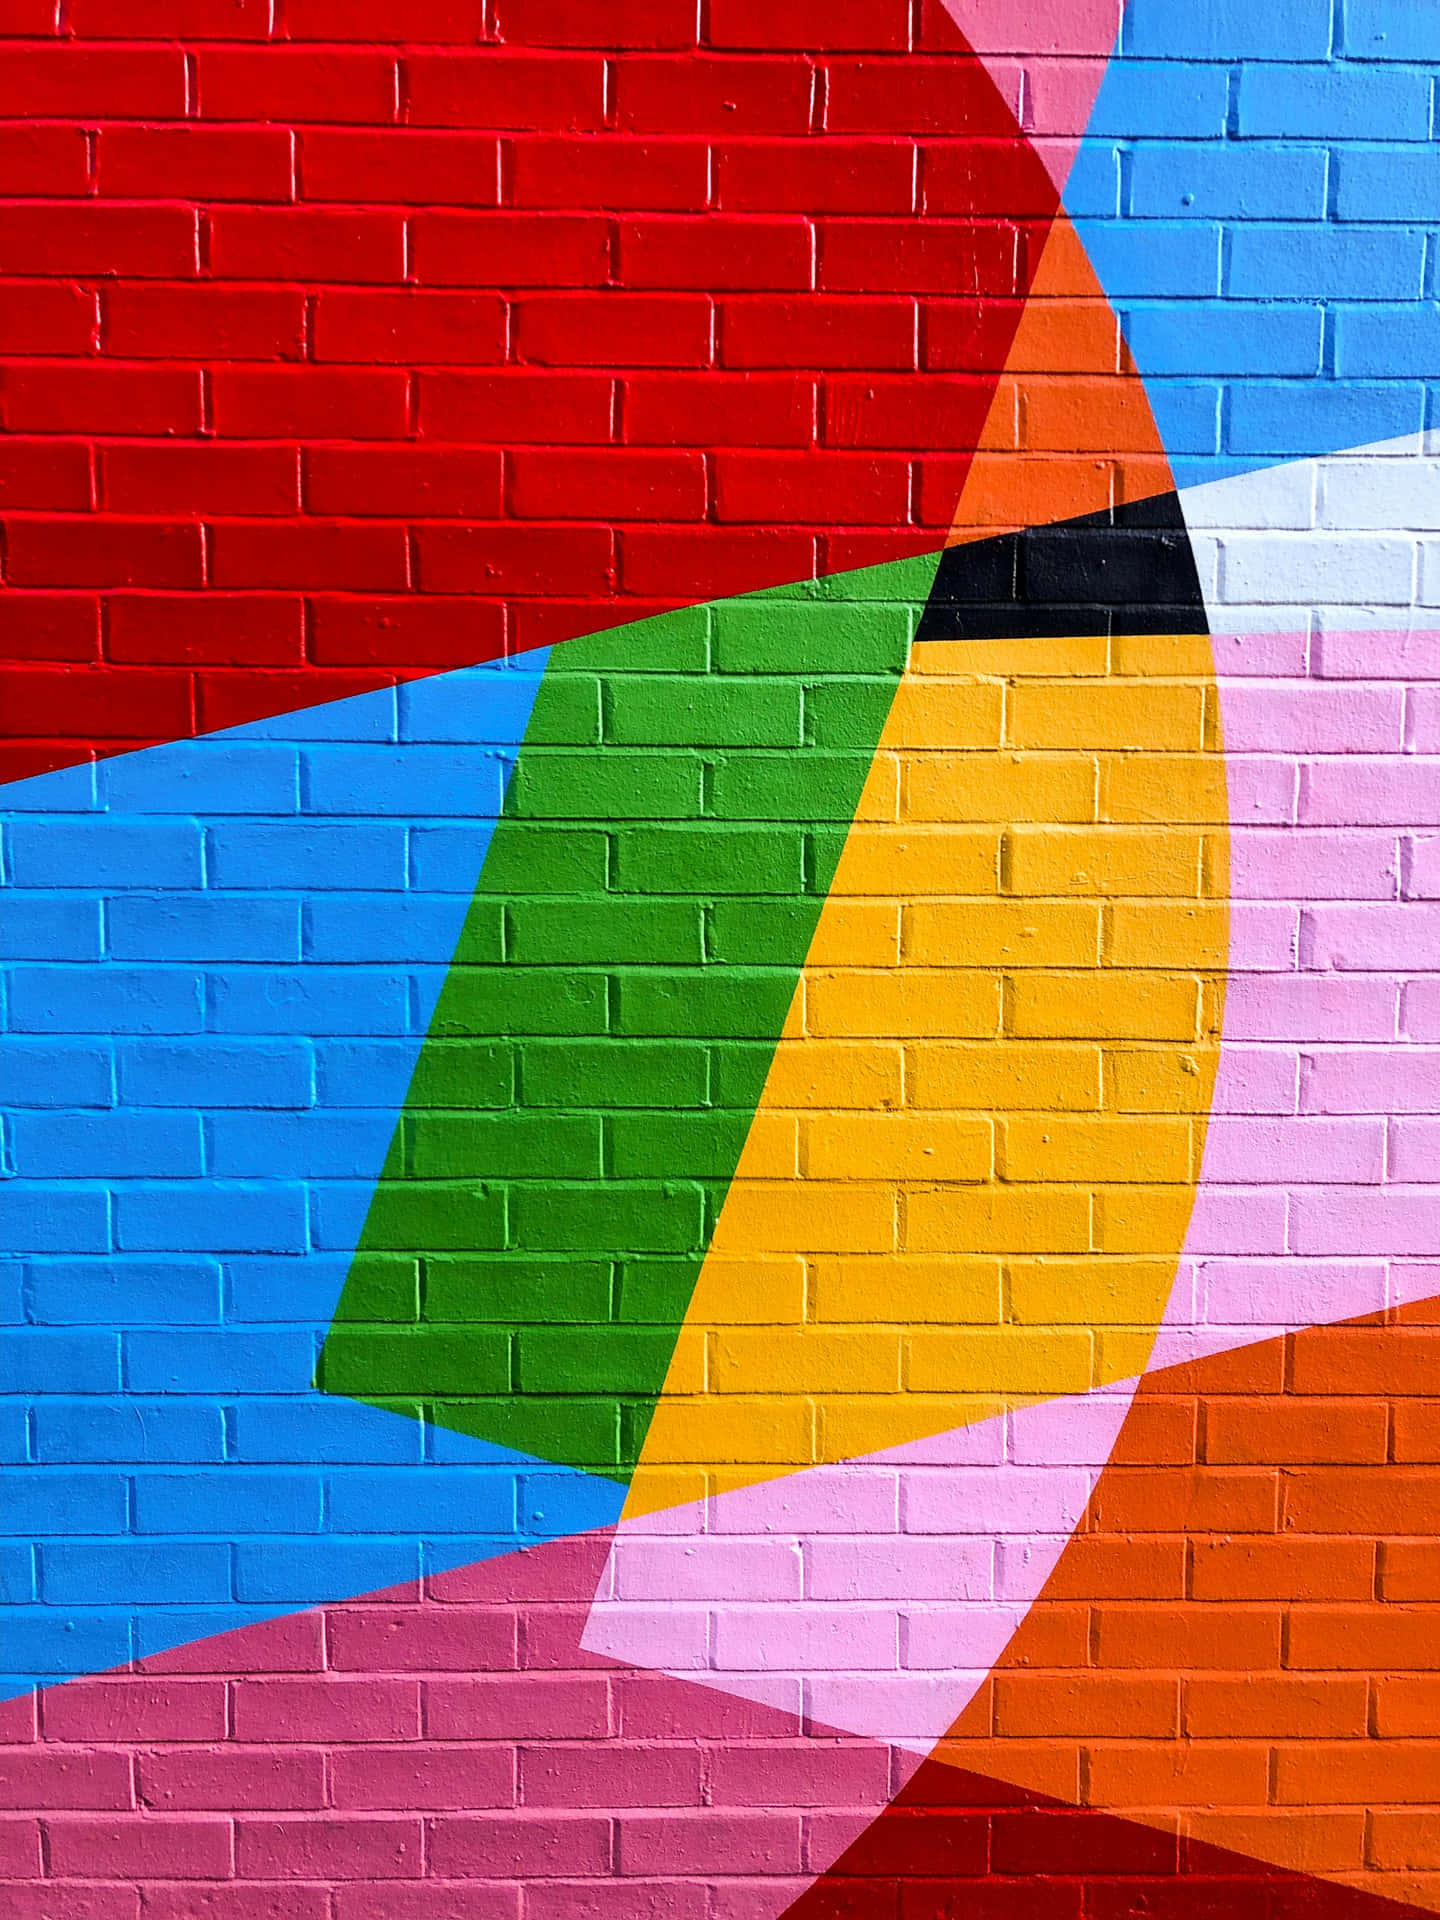 Colorful Brick Wall Mural.jpg Wallpaper